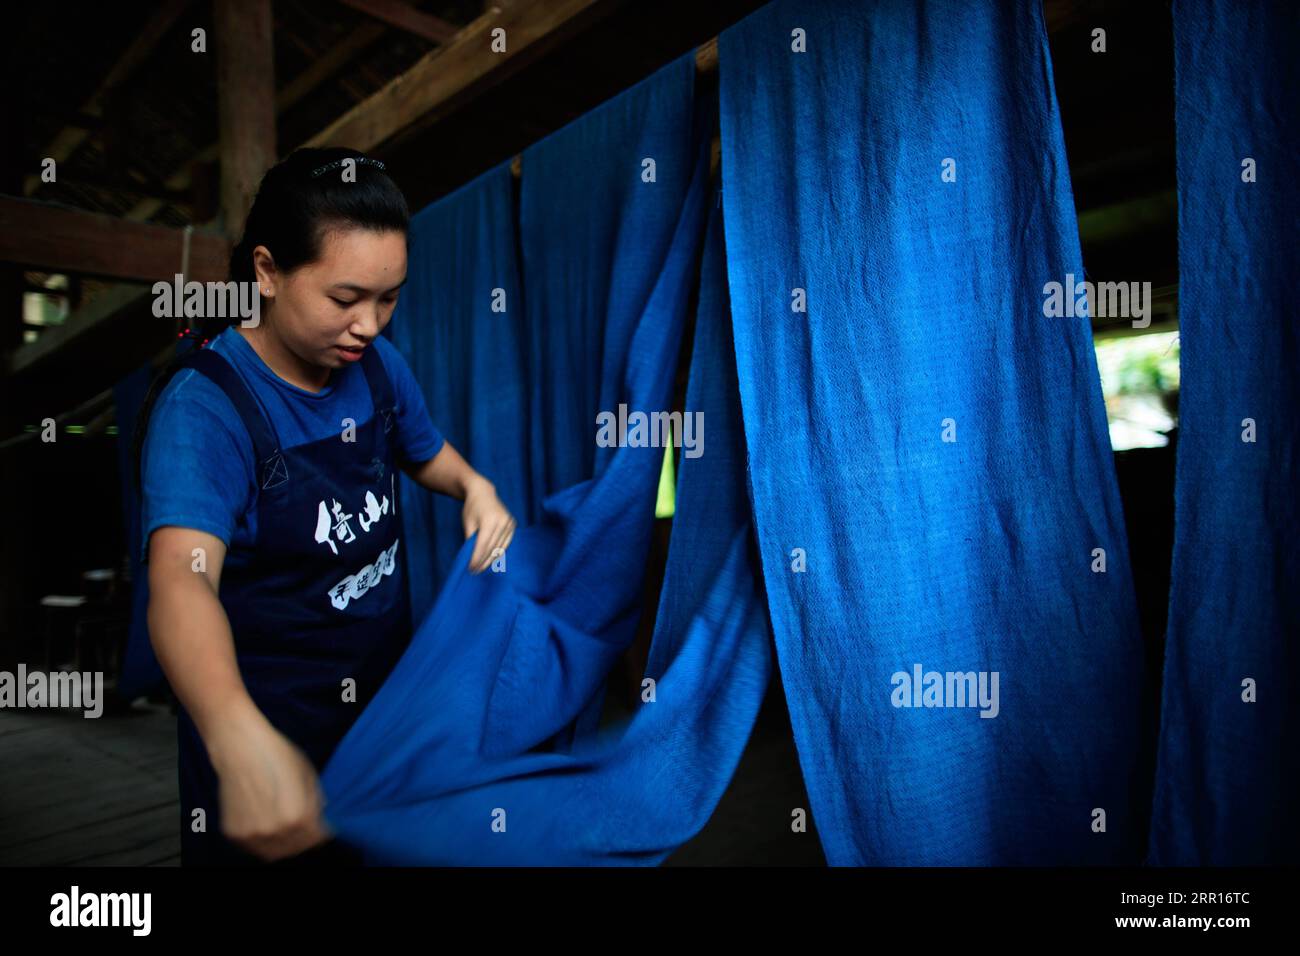 200907 -- RONGJIANG, le 7 septembre 2020 -- Une femme suspend un tissu dans un atelier du village de Fengdeng Dong, dans le comté de Rongjiang, dans la province du Guizhou, au sud-ouest de la Chine, le 6 septembre 2020. Les habitants profitent des conditions météorologiques d'automne favorables pour faire le tissu traditionnel du groupe ethnique Dong. CHINA-GUIZHOU-DONG VILLAGE-TISSU FAISANT CN LIUXXU PUBLICATIONXNOTXINXCHN Banque D'Images